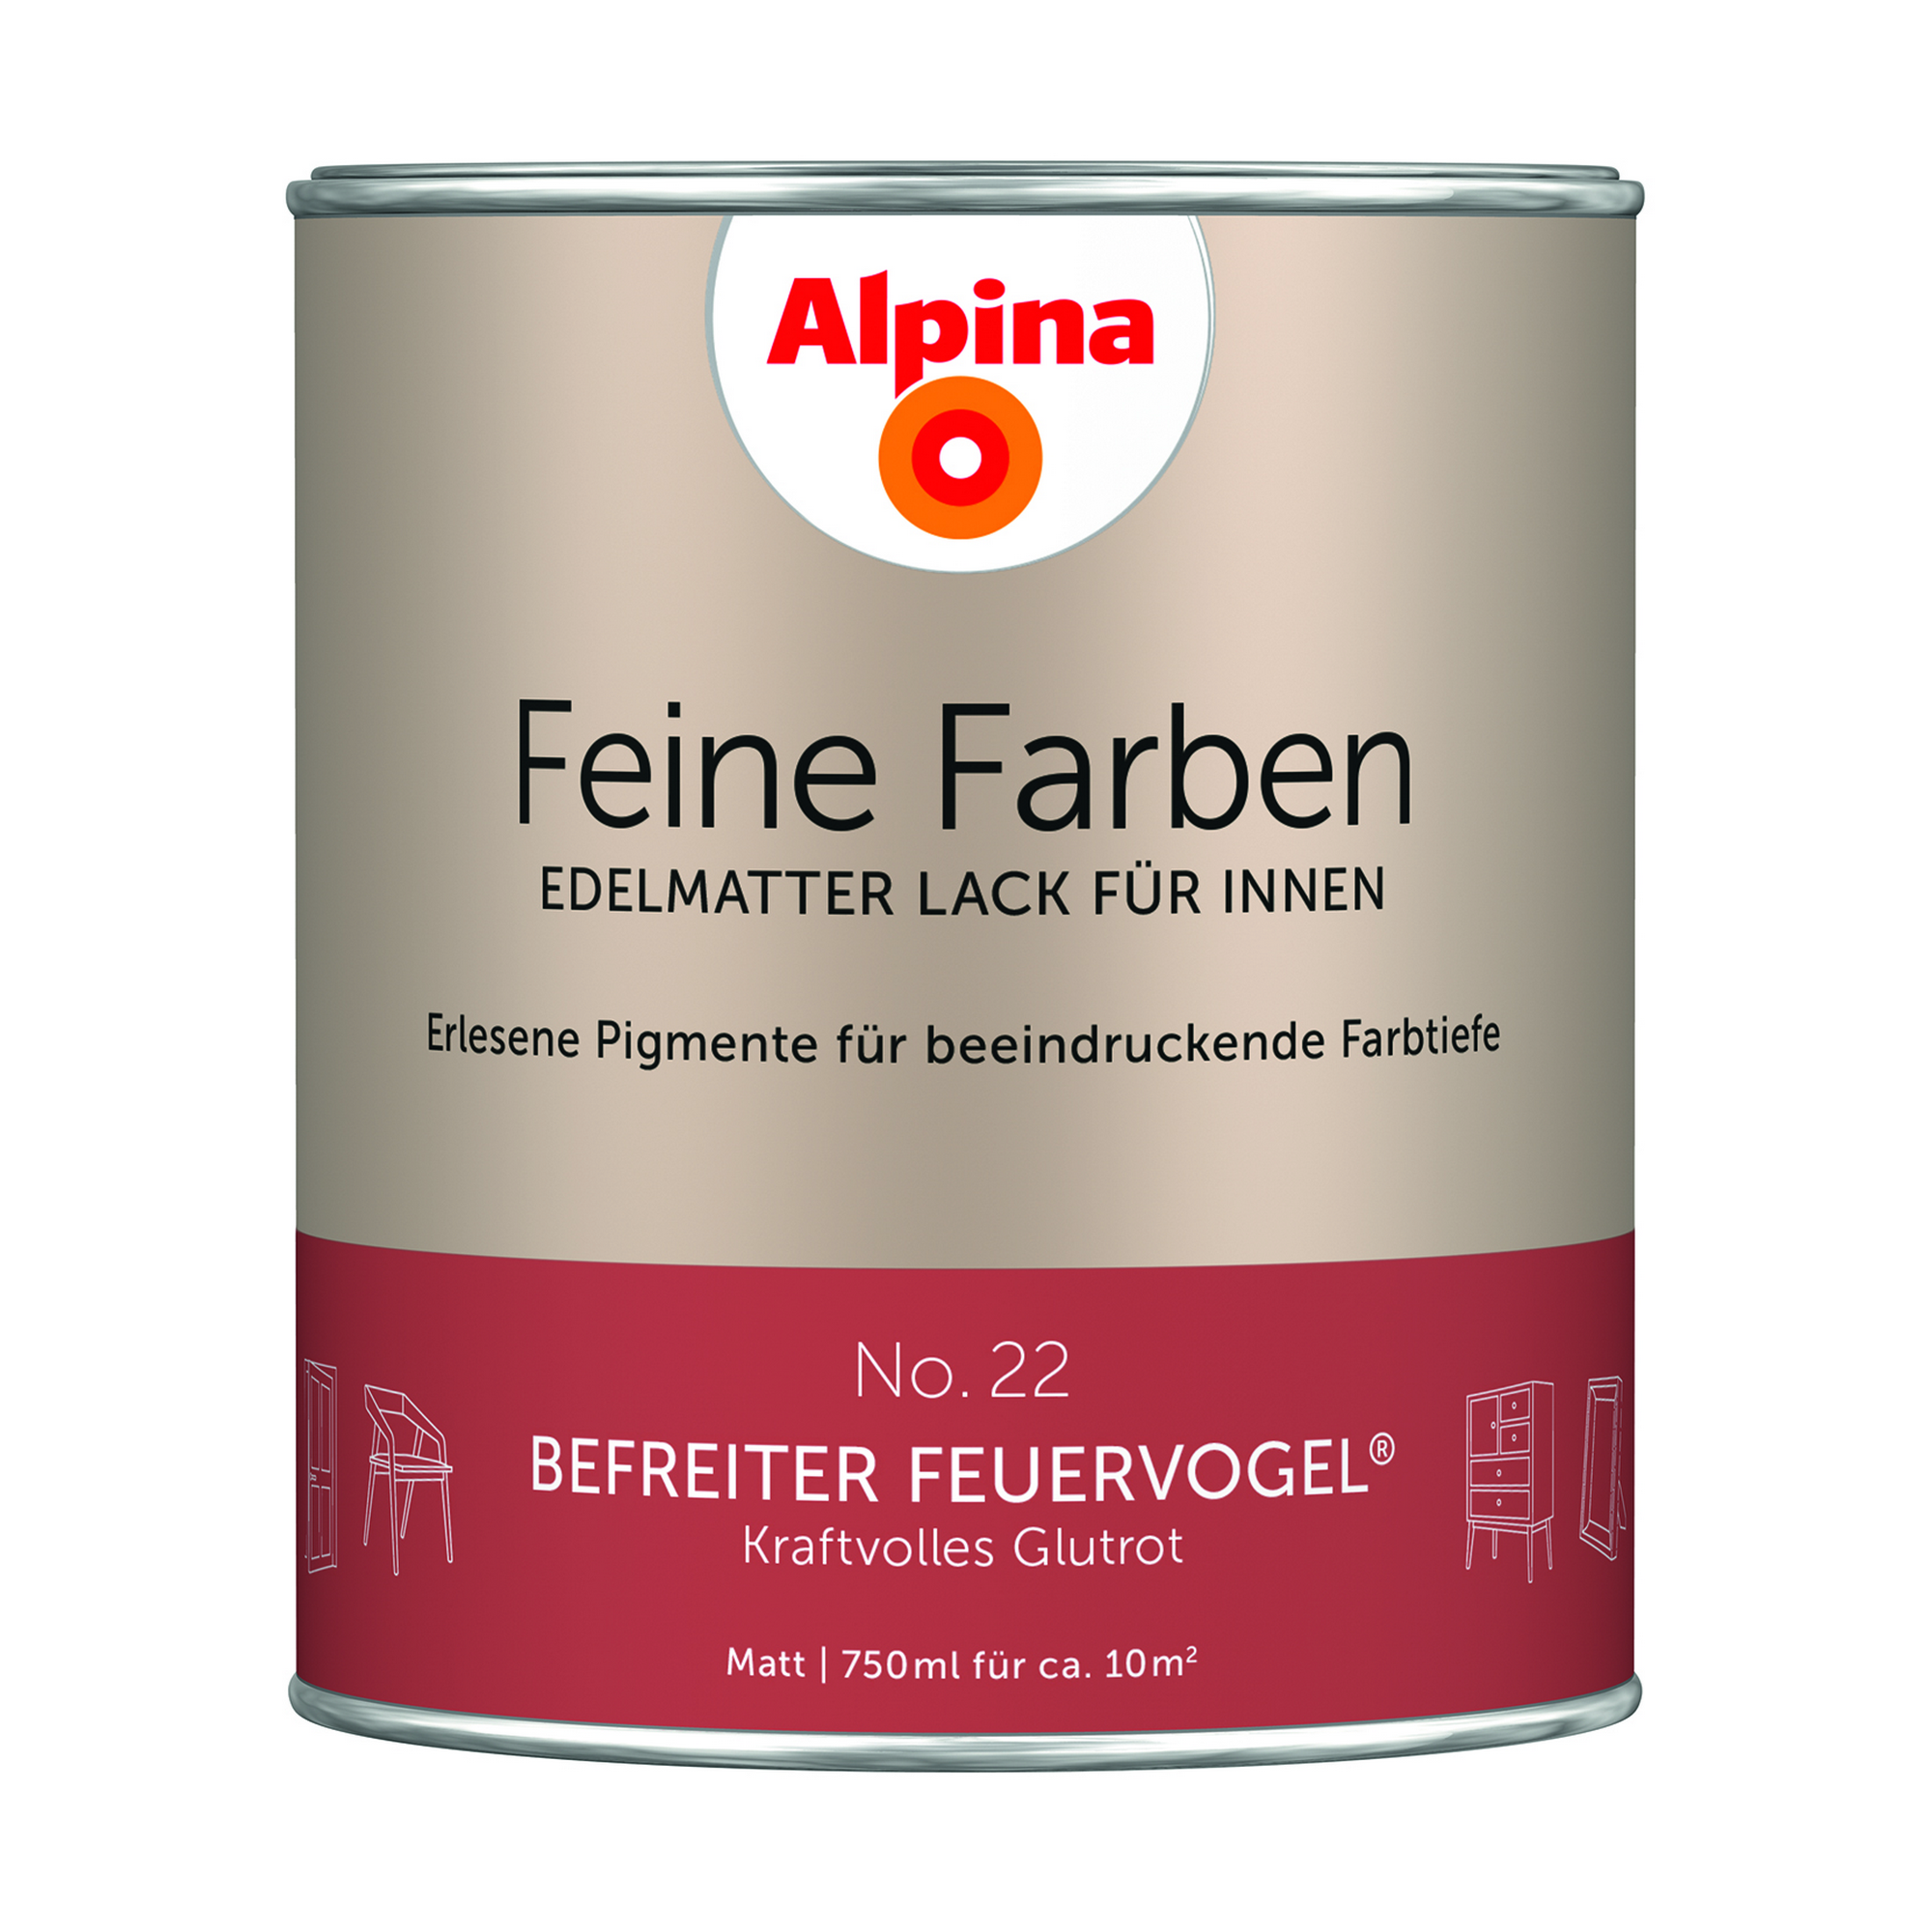 Feine Farben 'Befreiter Feuervogel' rostrot matt 750 ml + product picture